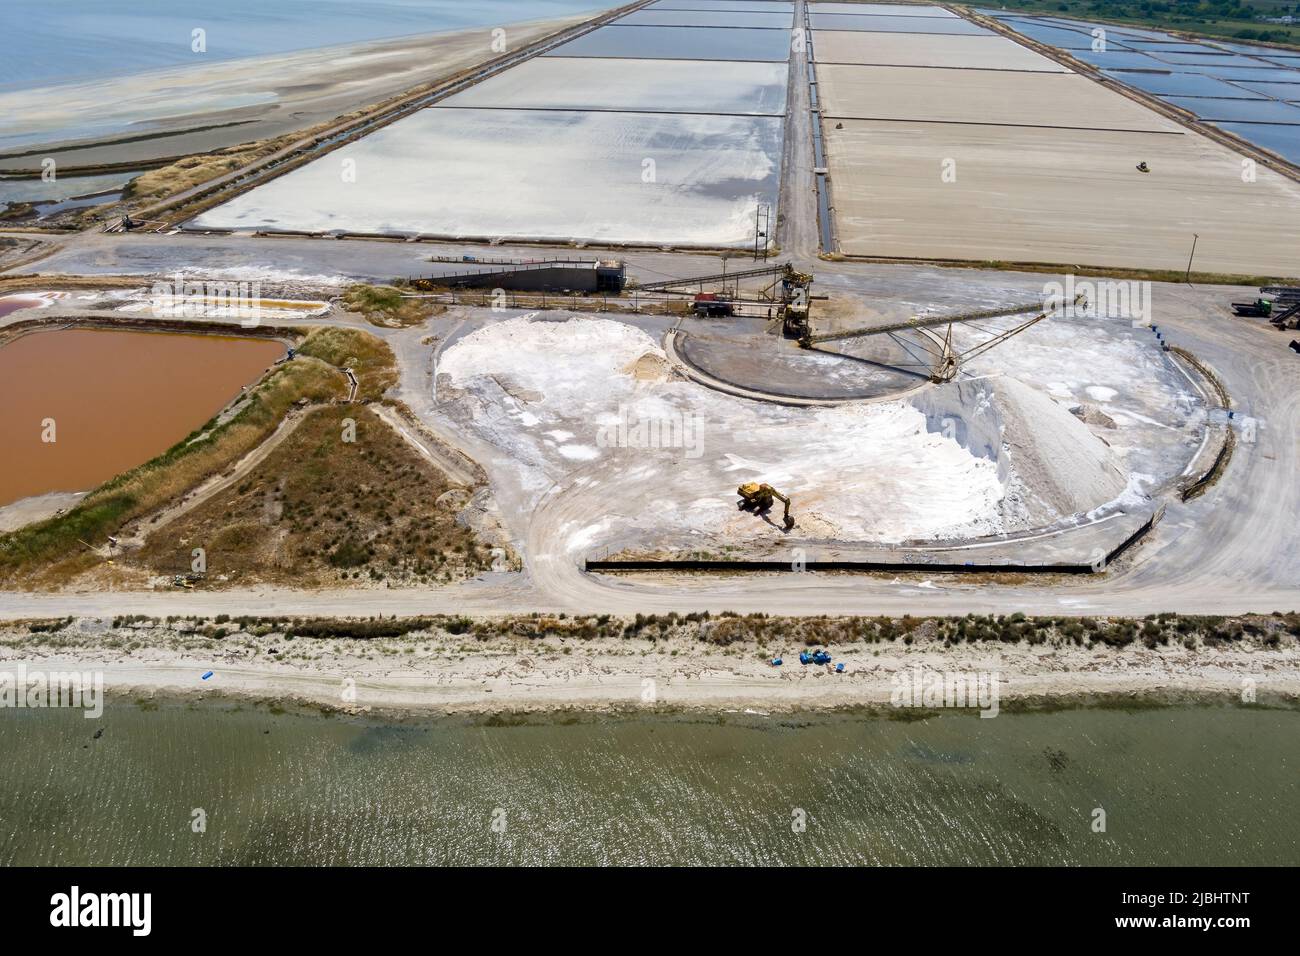 Vue aérienne des étangs d'évaporation du sel et des monticules de sel ces étangs sont remplis de l'océan et des cristaux de sel sont récoltés. Kitros Pieria, Grèce Banque D'Images